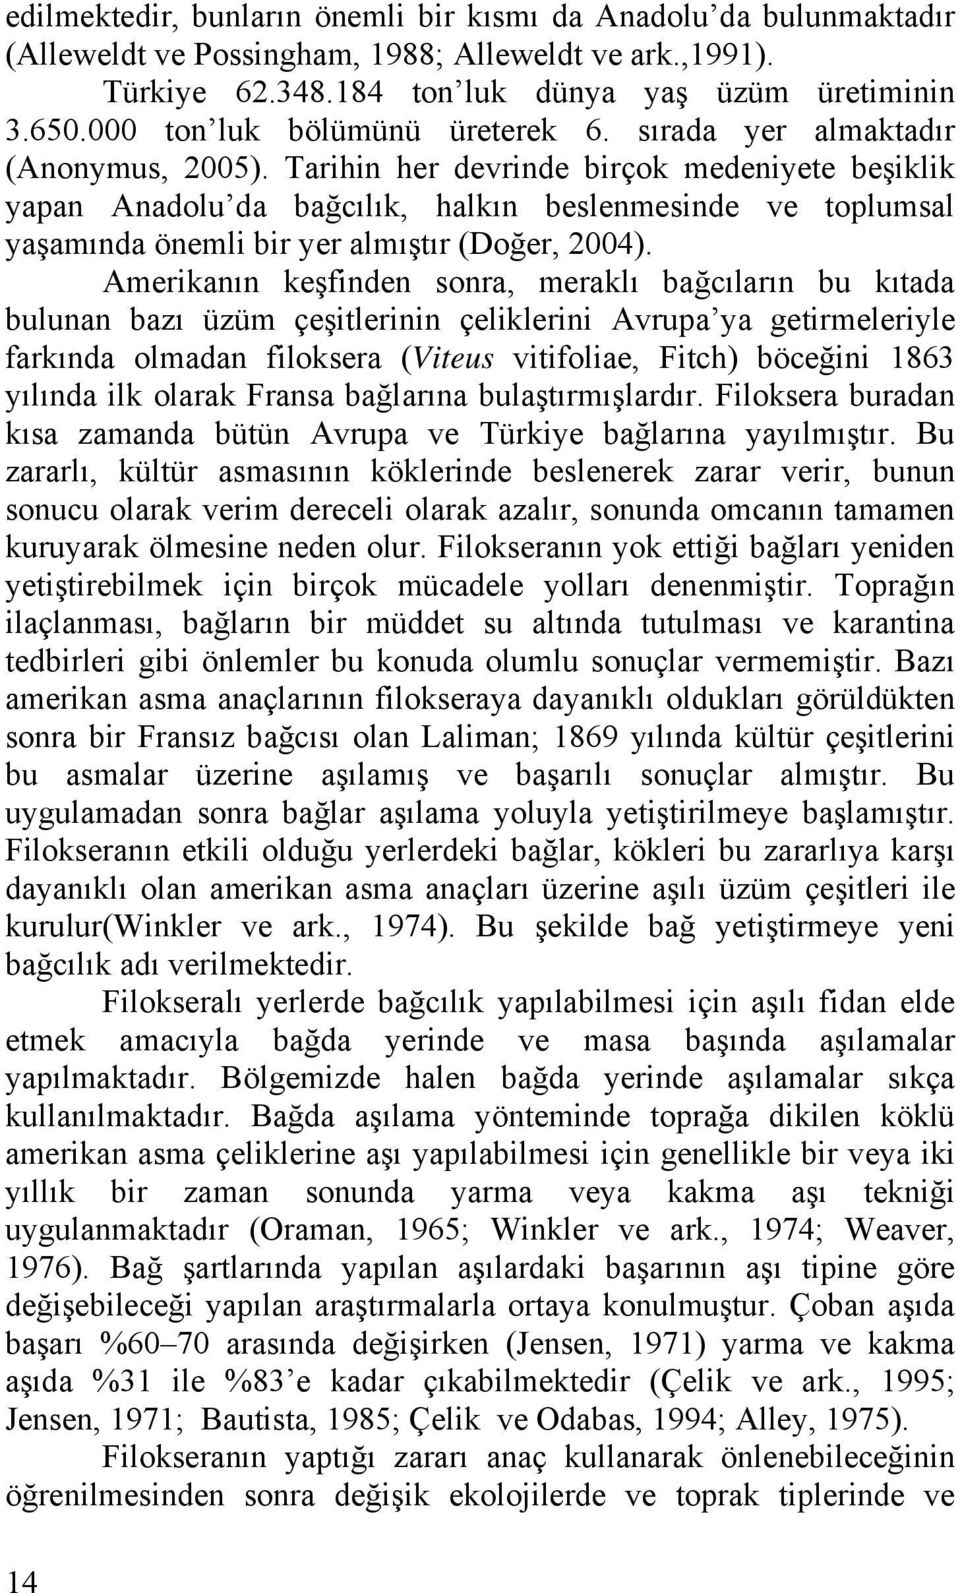 Tarihin her devrinde birçok medeniyete beşiklik yapan Anadolu da bağcılık, halkın beslenmesinde ve toplumsal yaşamında önemli bir yer almıştır (Doğer, 2004).